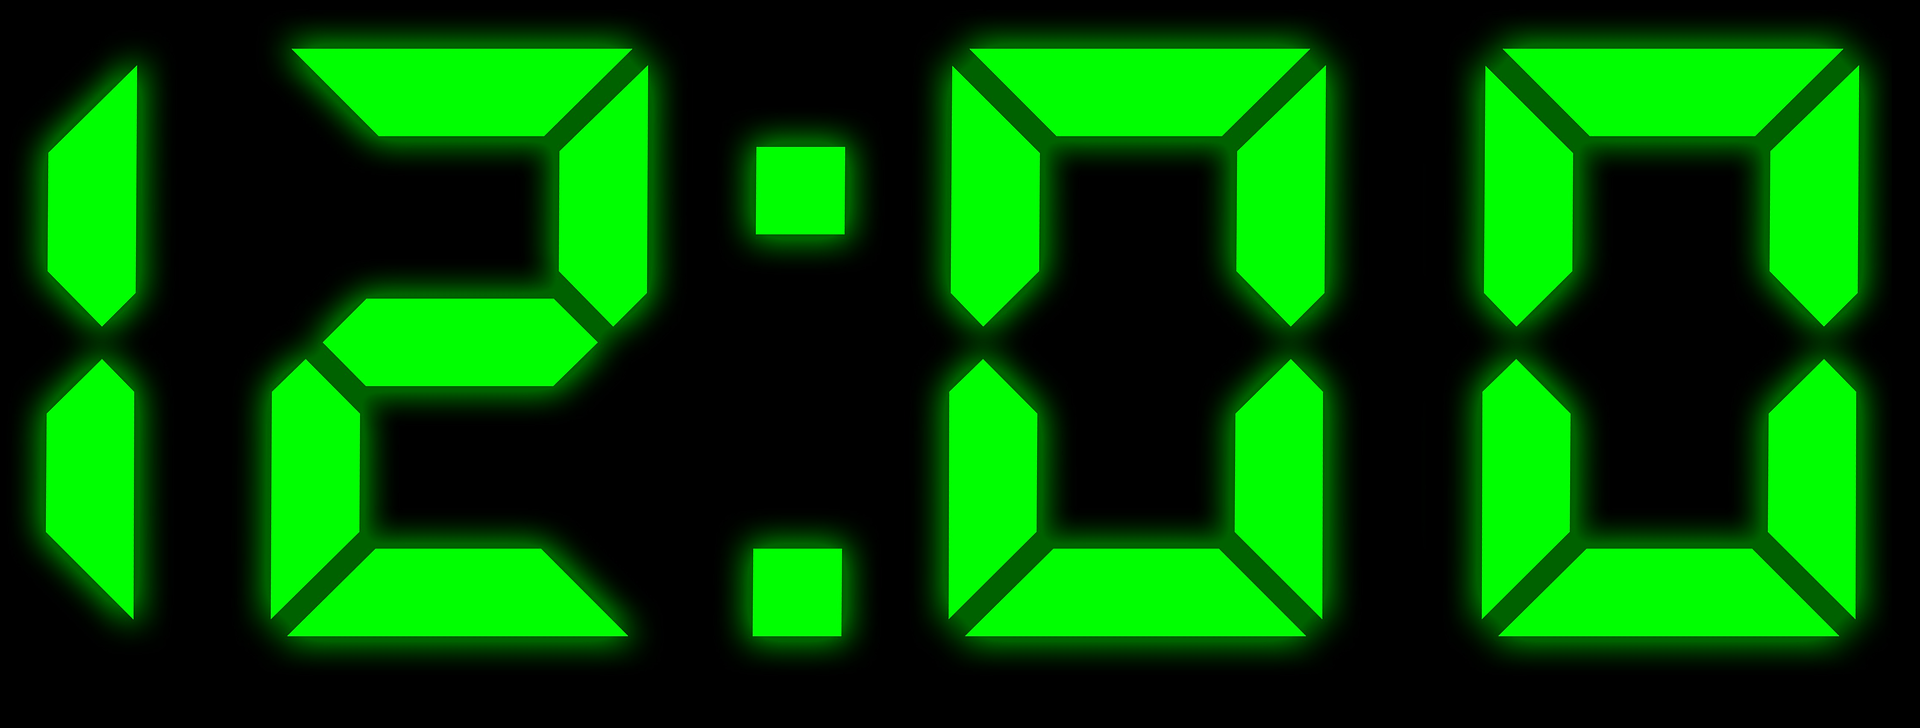 12 часов 17.03. Цифры электронных часов. Электронные часы зеленые. Часы цифровые зеленые. Электронные часы 12 00.